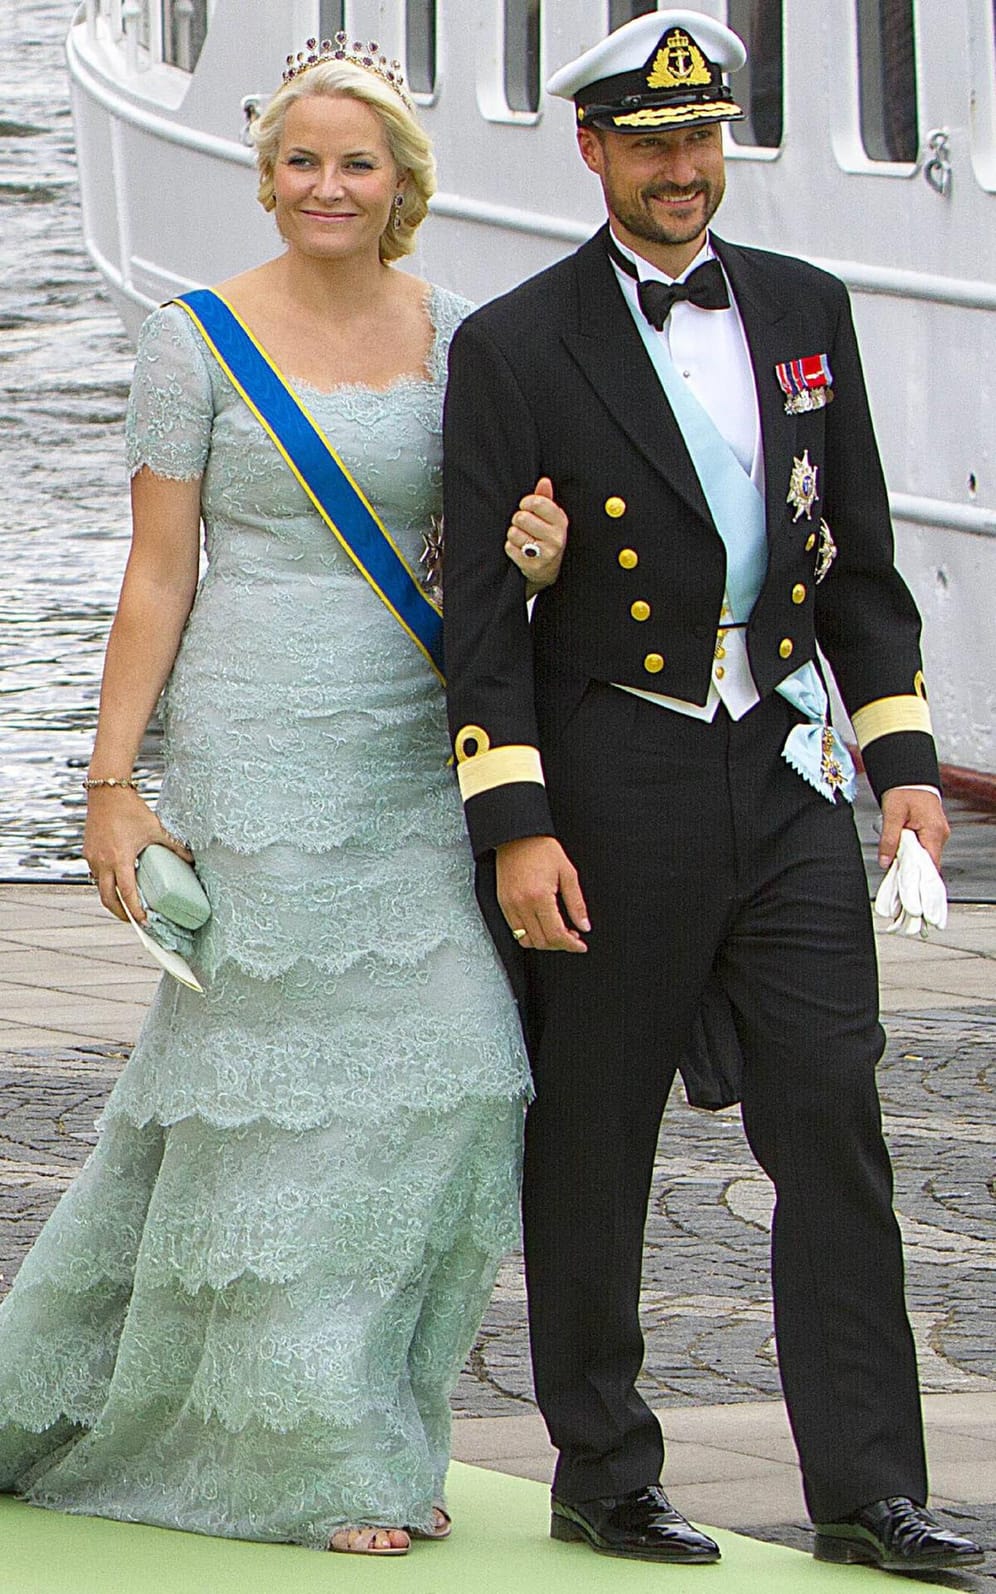 Mette-Marit und Haakon bei der Hochzeit von Madeleine von Schweden und Chris O'Neill.